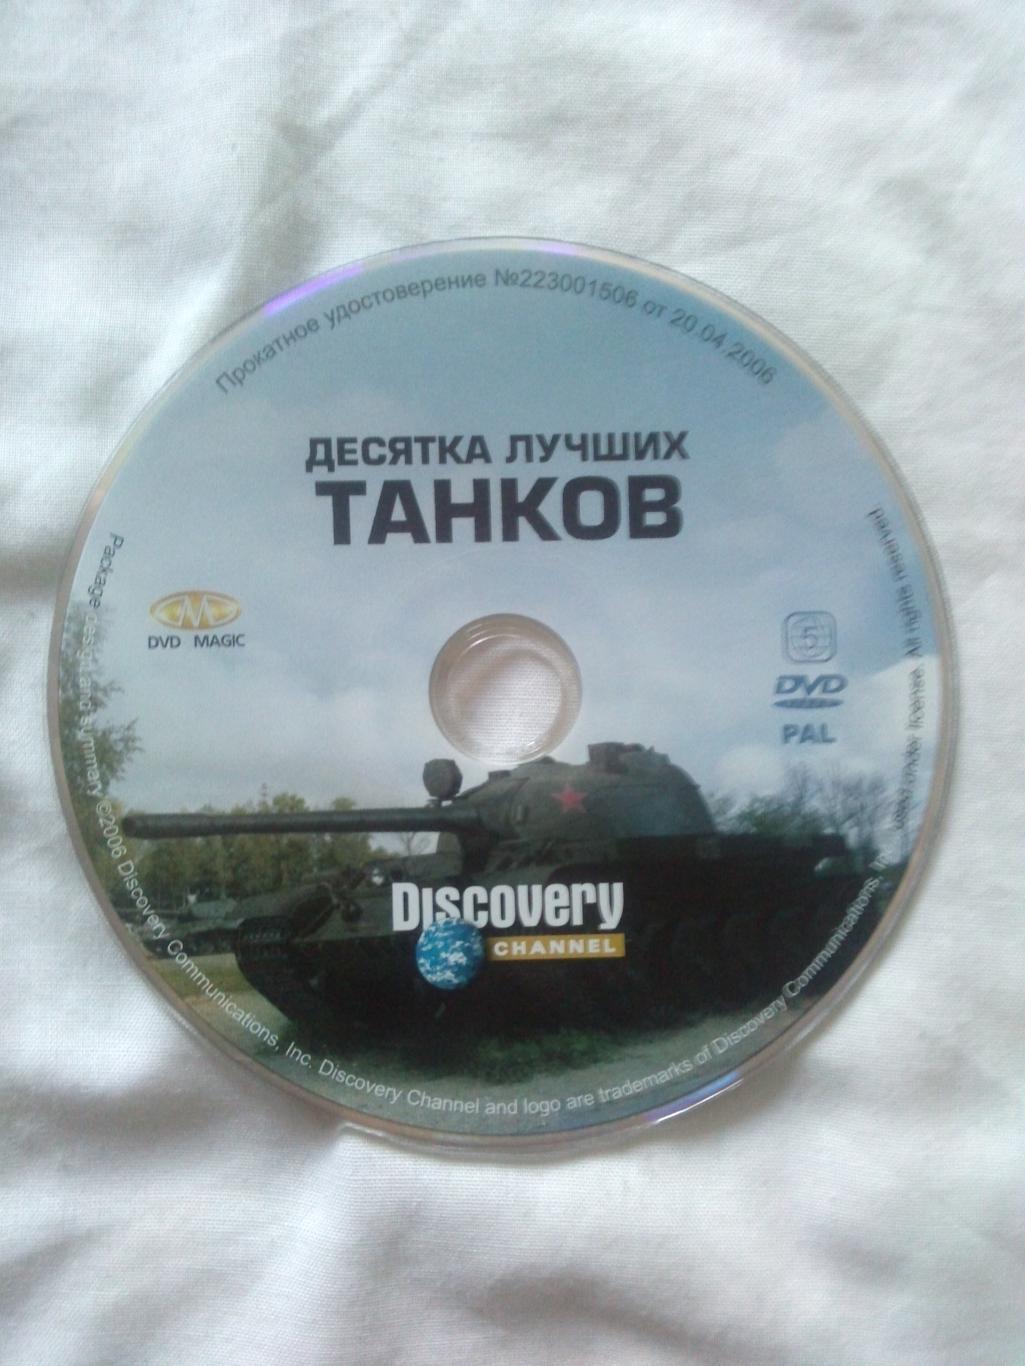 DVD Discovery : 10 лучших танков (Военная техника) лицензия (Танк) новый 3